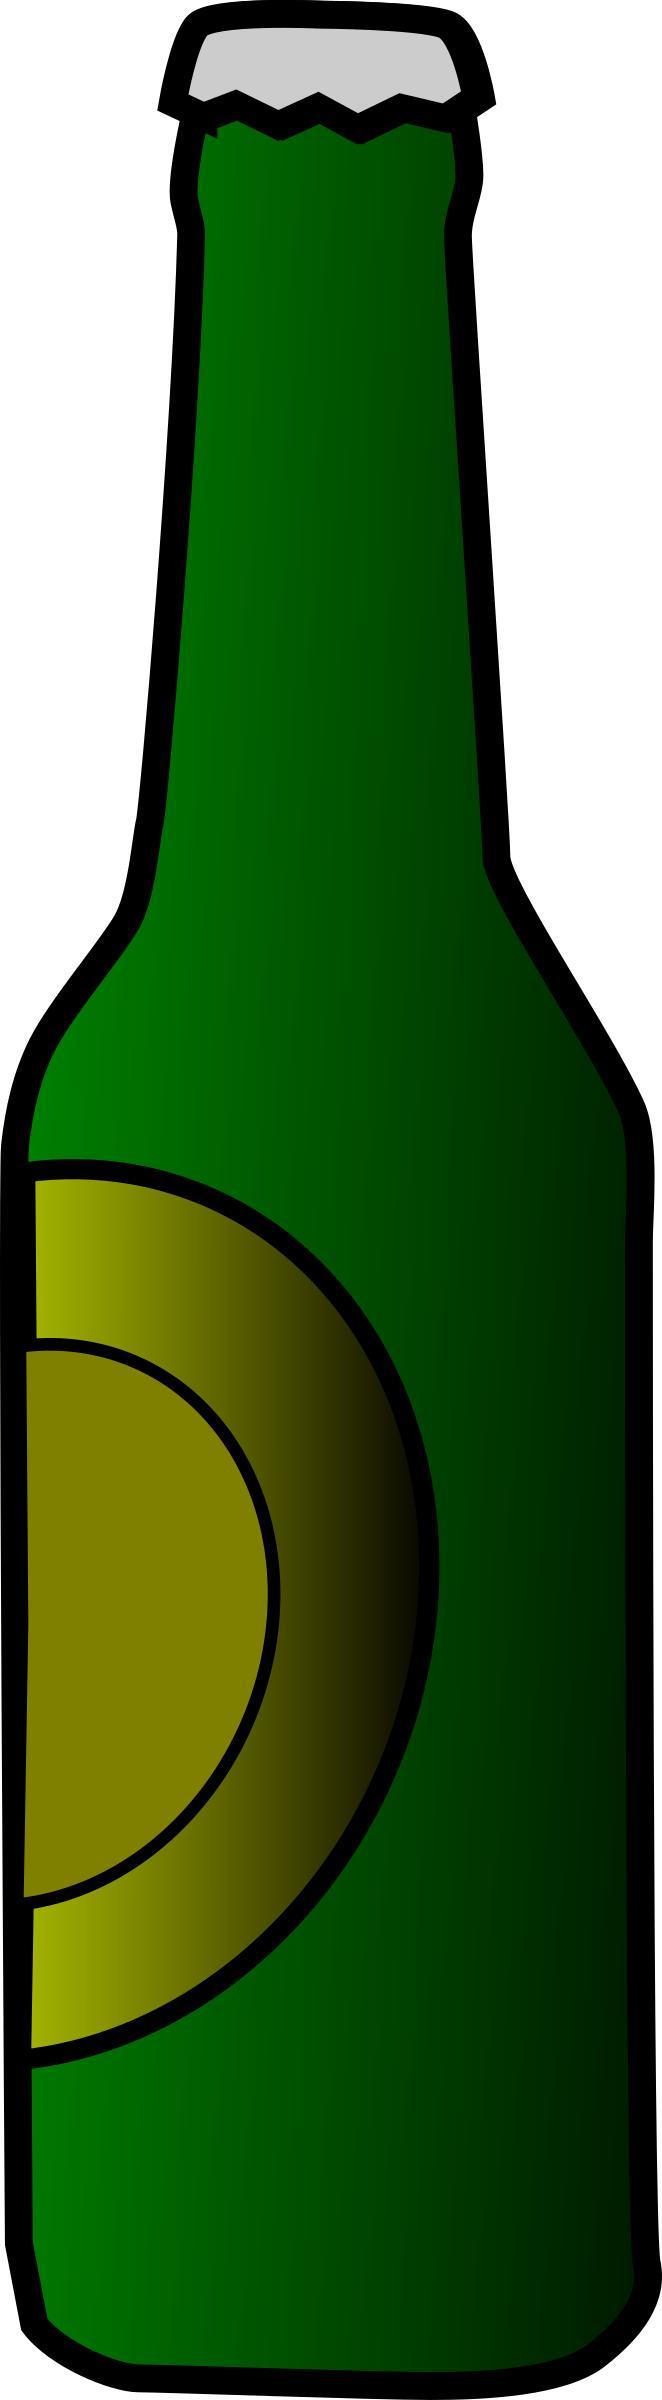 beer bottle png transparent